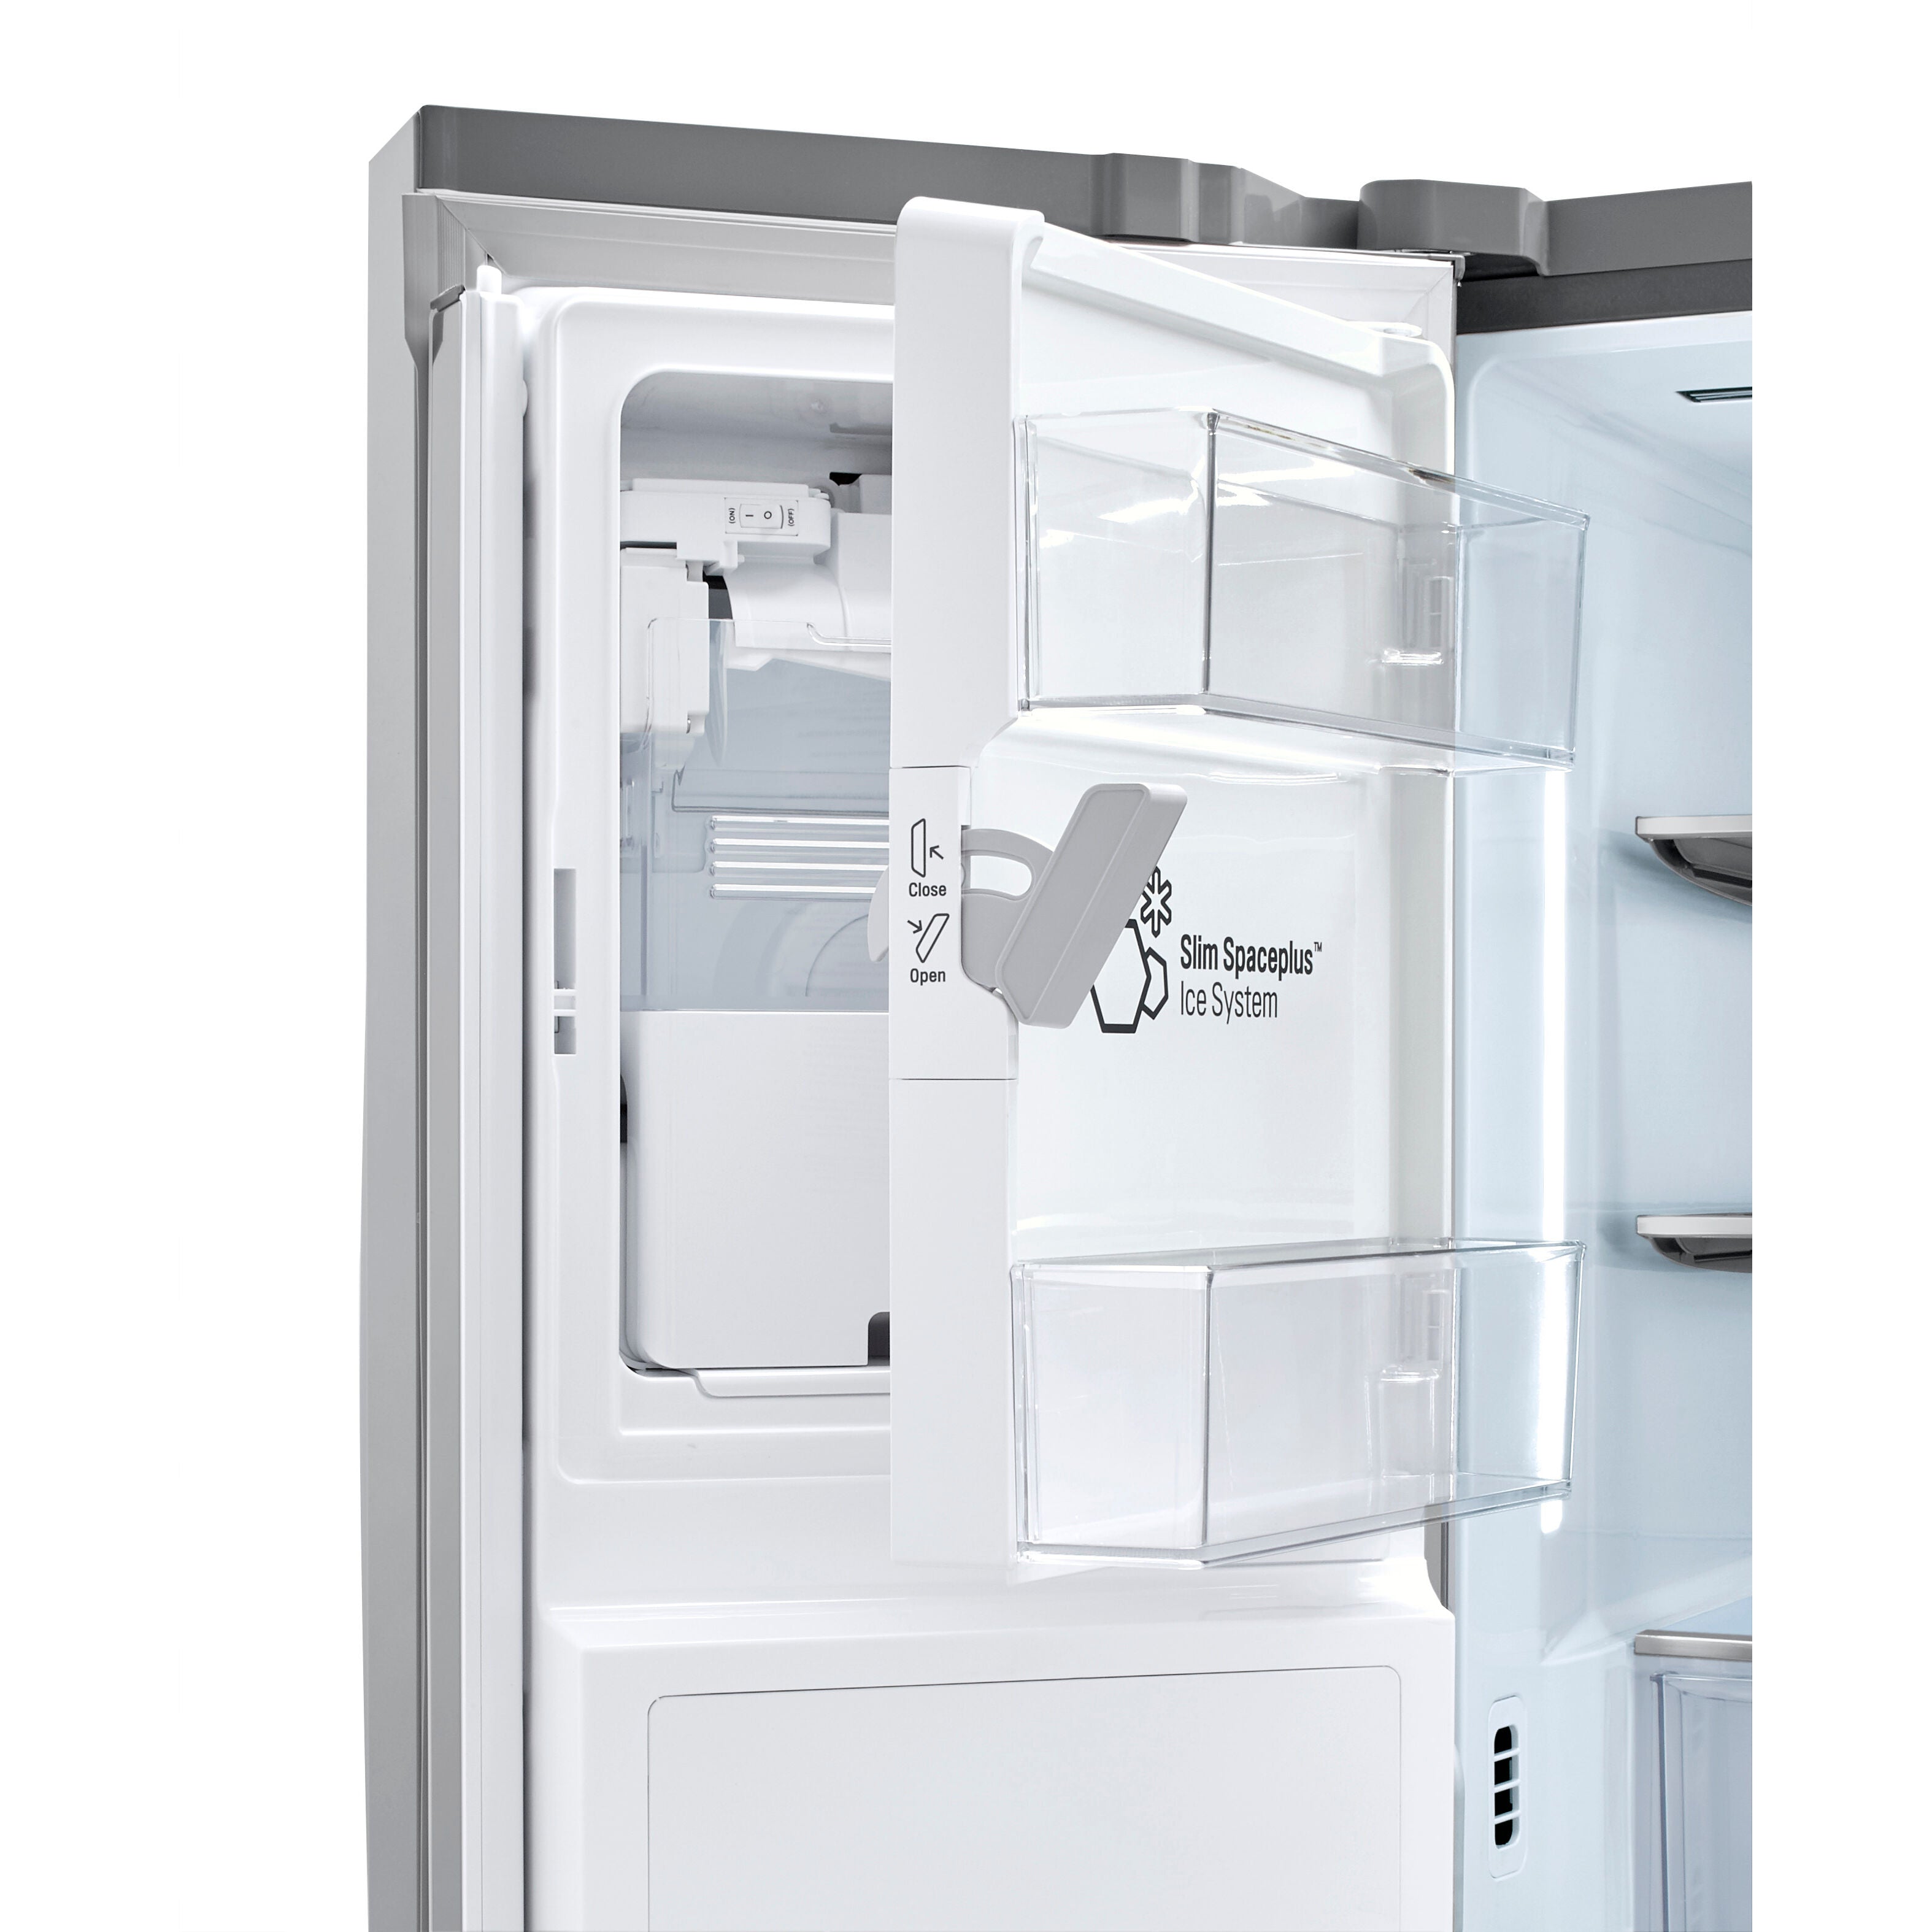 LG 36 Inch 3-Door French Door Refrigerator in Stainless Steel 24 Cu. Ft. (LRFXC2416S)